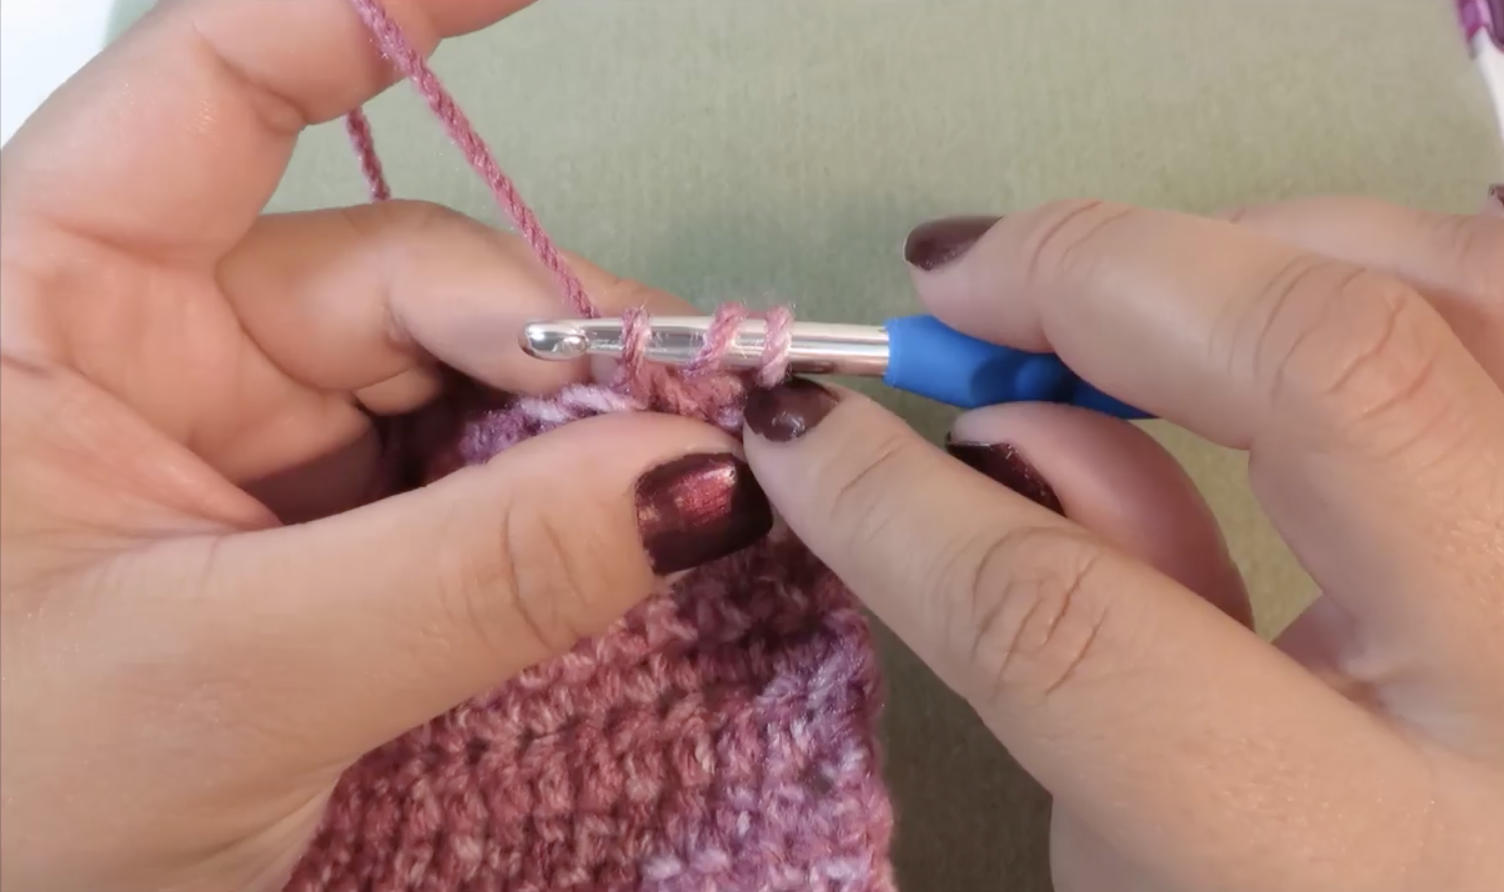 Set De 6 Agujas Crochet Para Tejer Hilo, Lana, Estambre